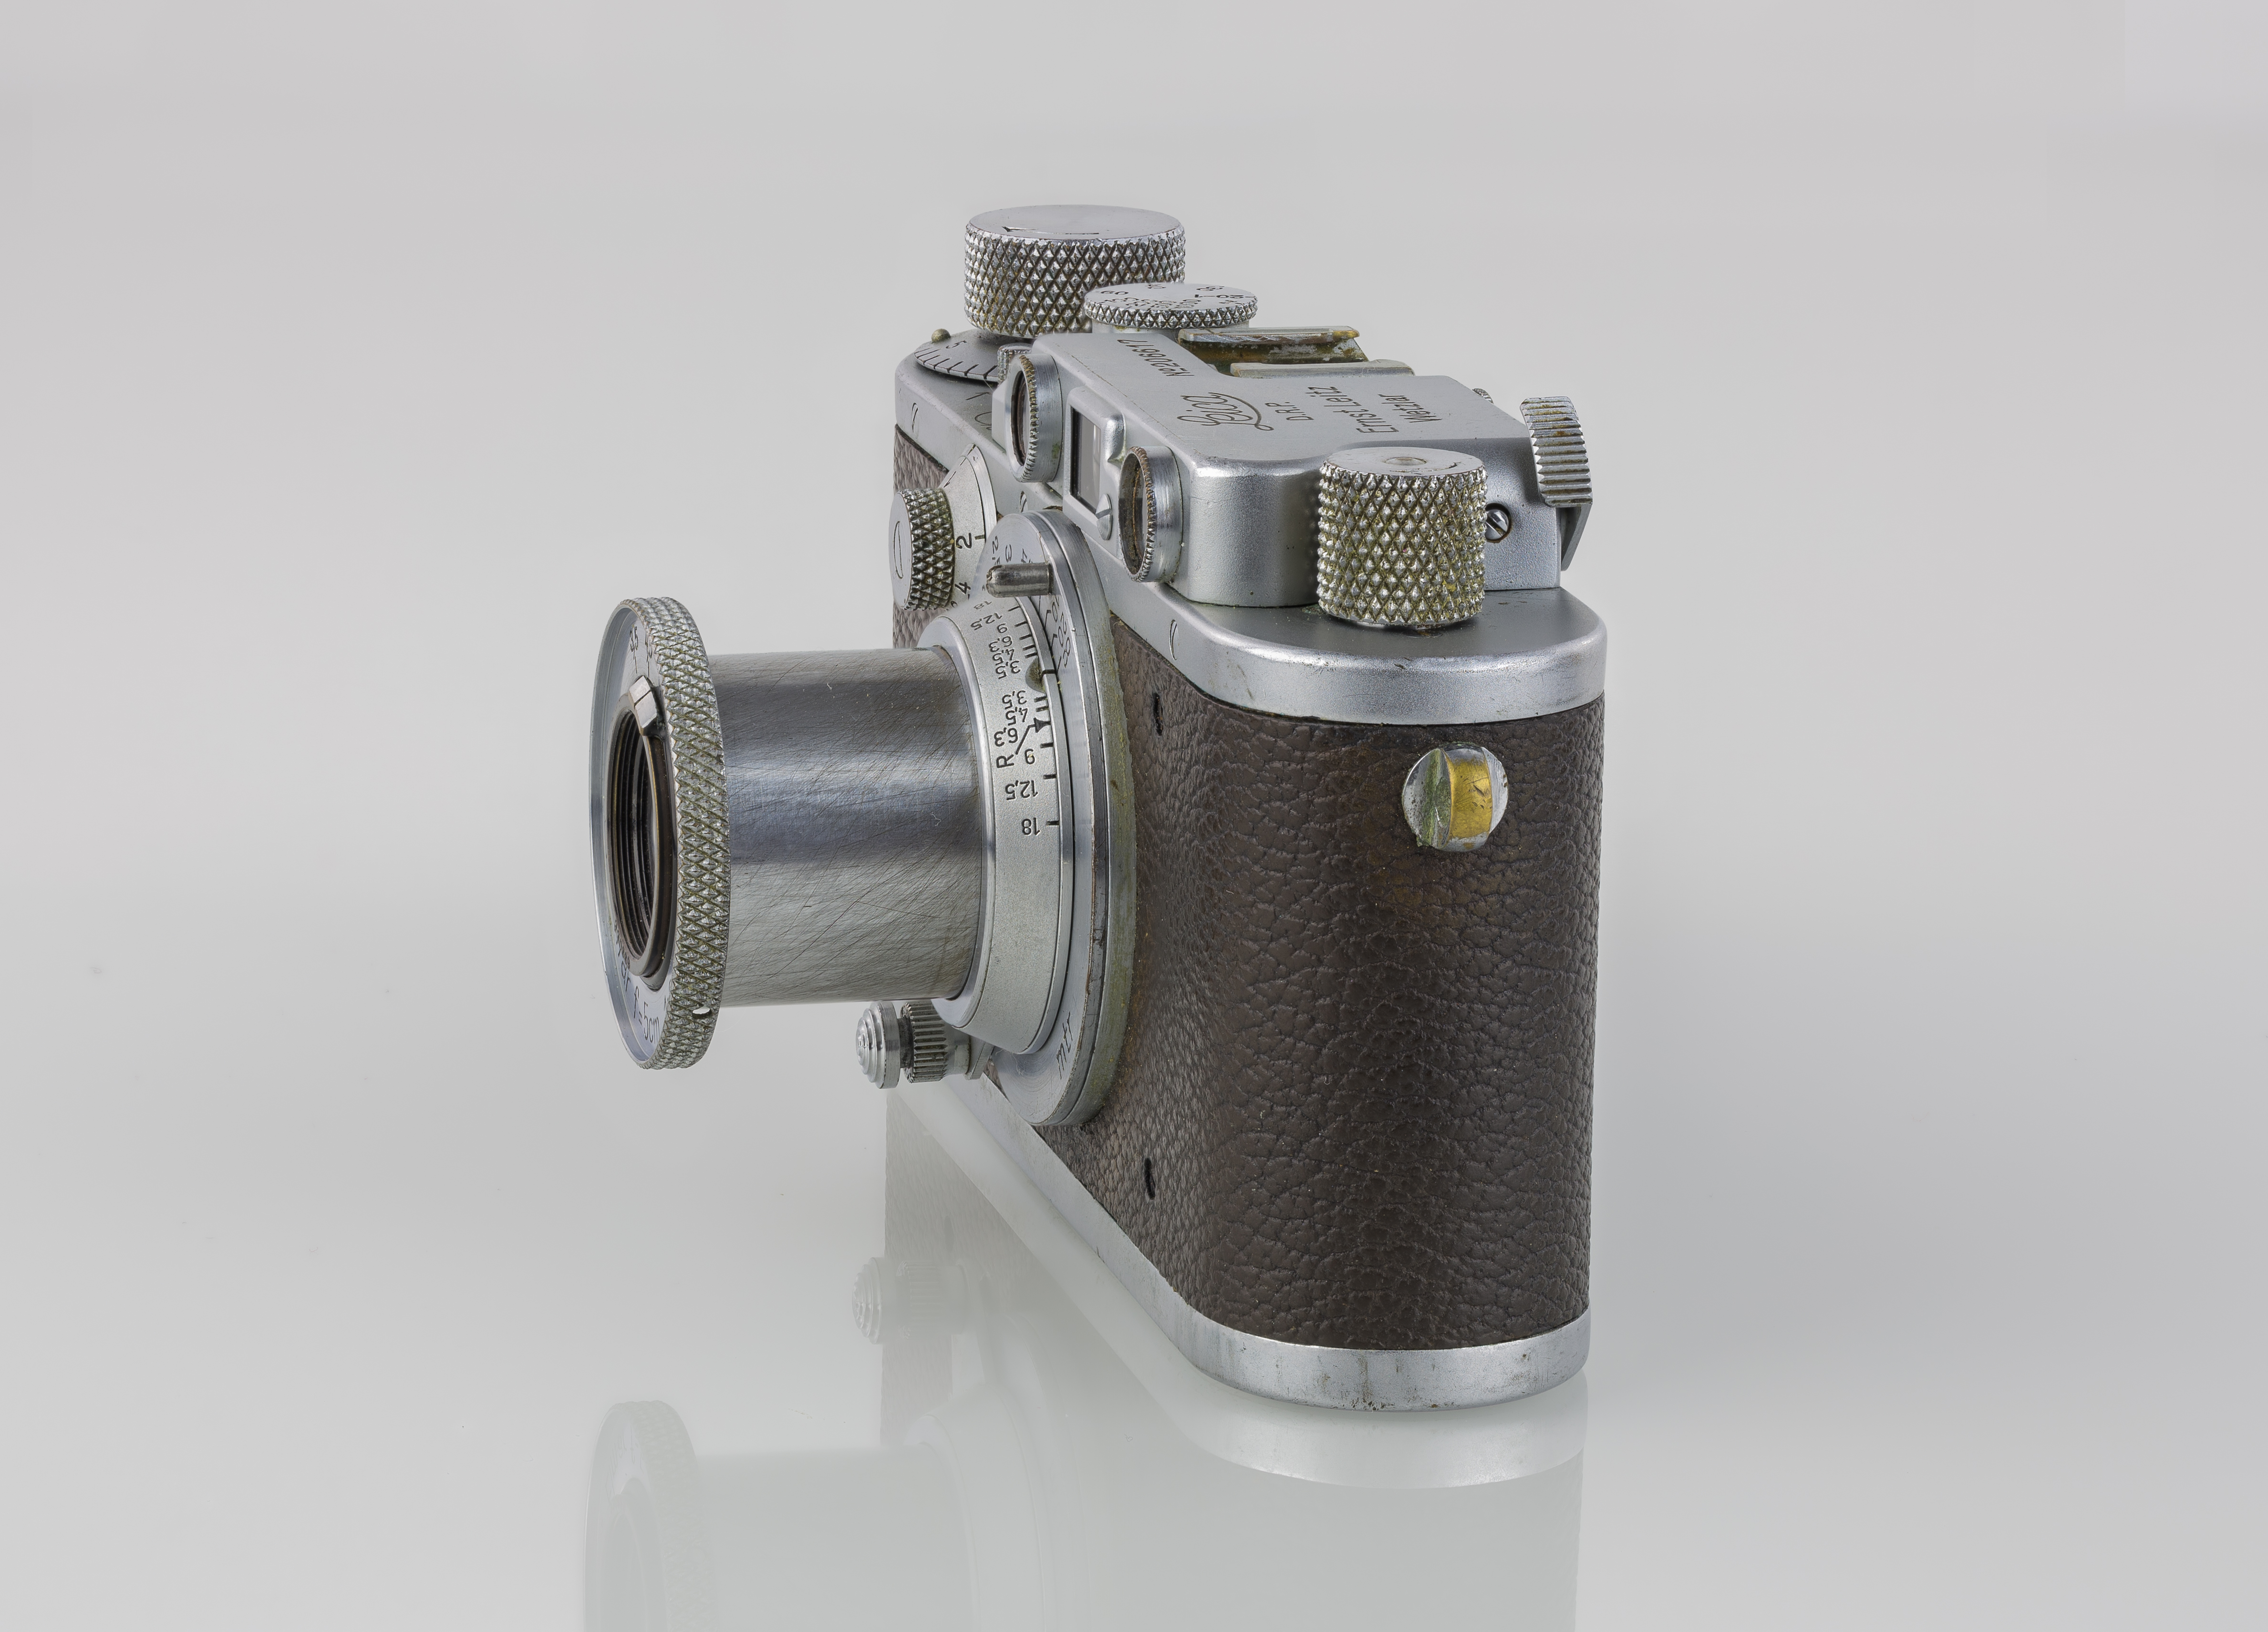 LEI0260 197 Leica IIIa - Sn. 206617 1936-M39 Side view-Bearbeitet